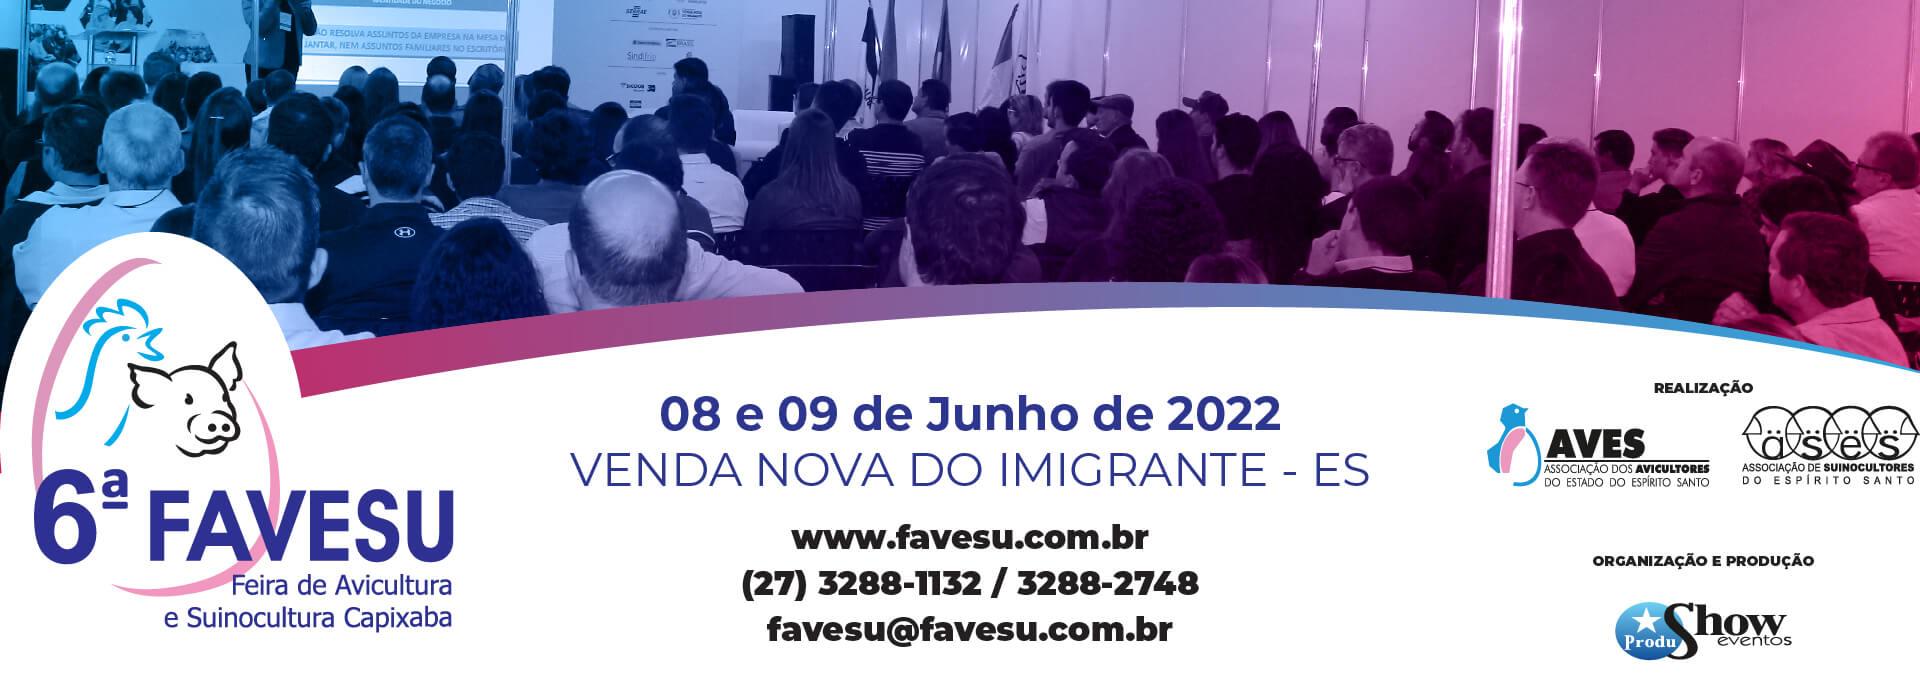 ASSINATURA DE EMAIL FAVESU 2022